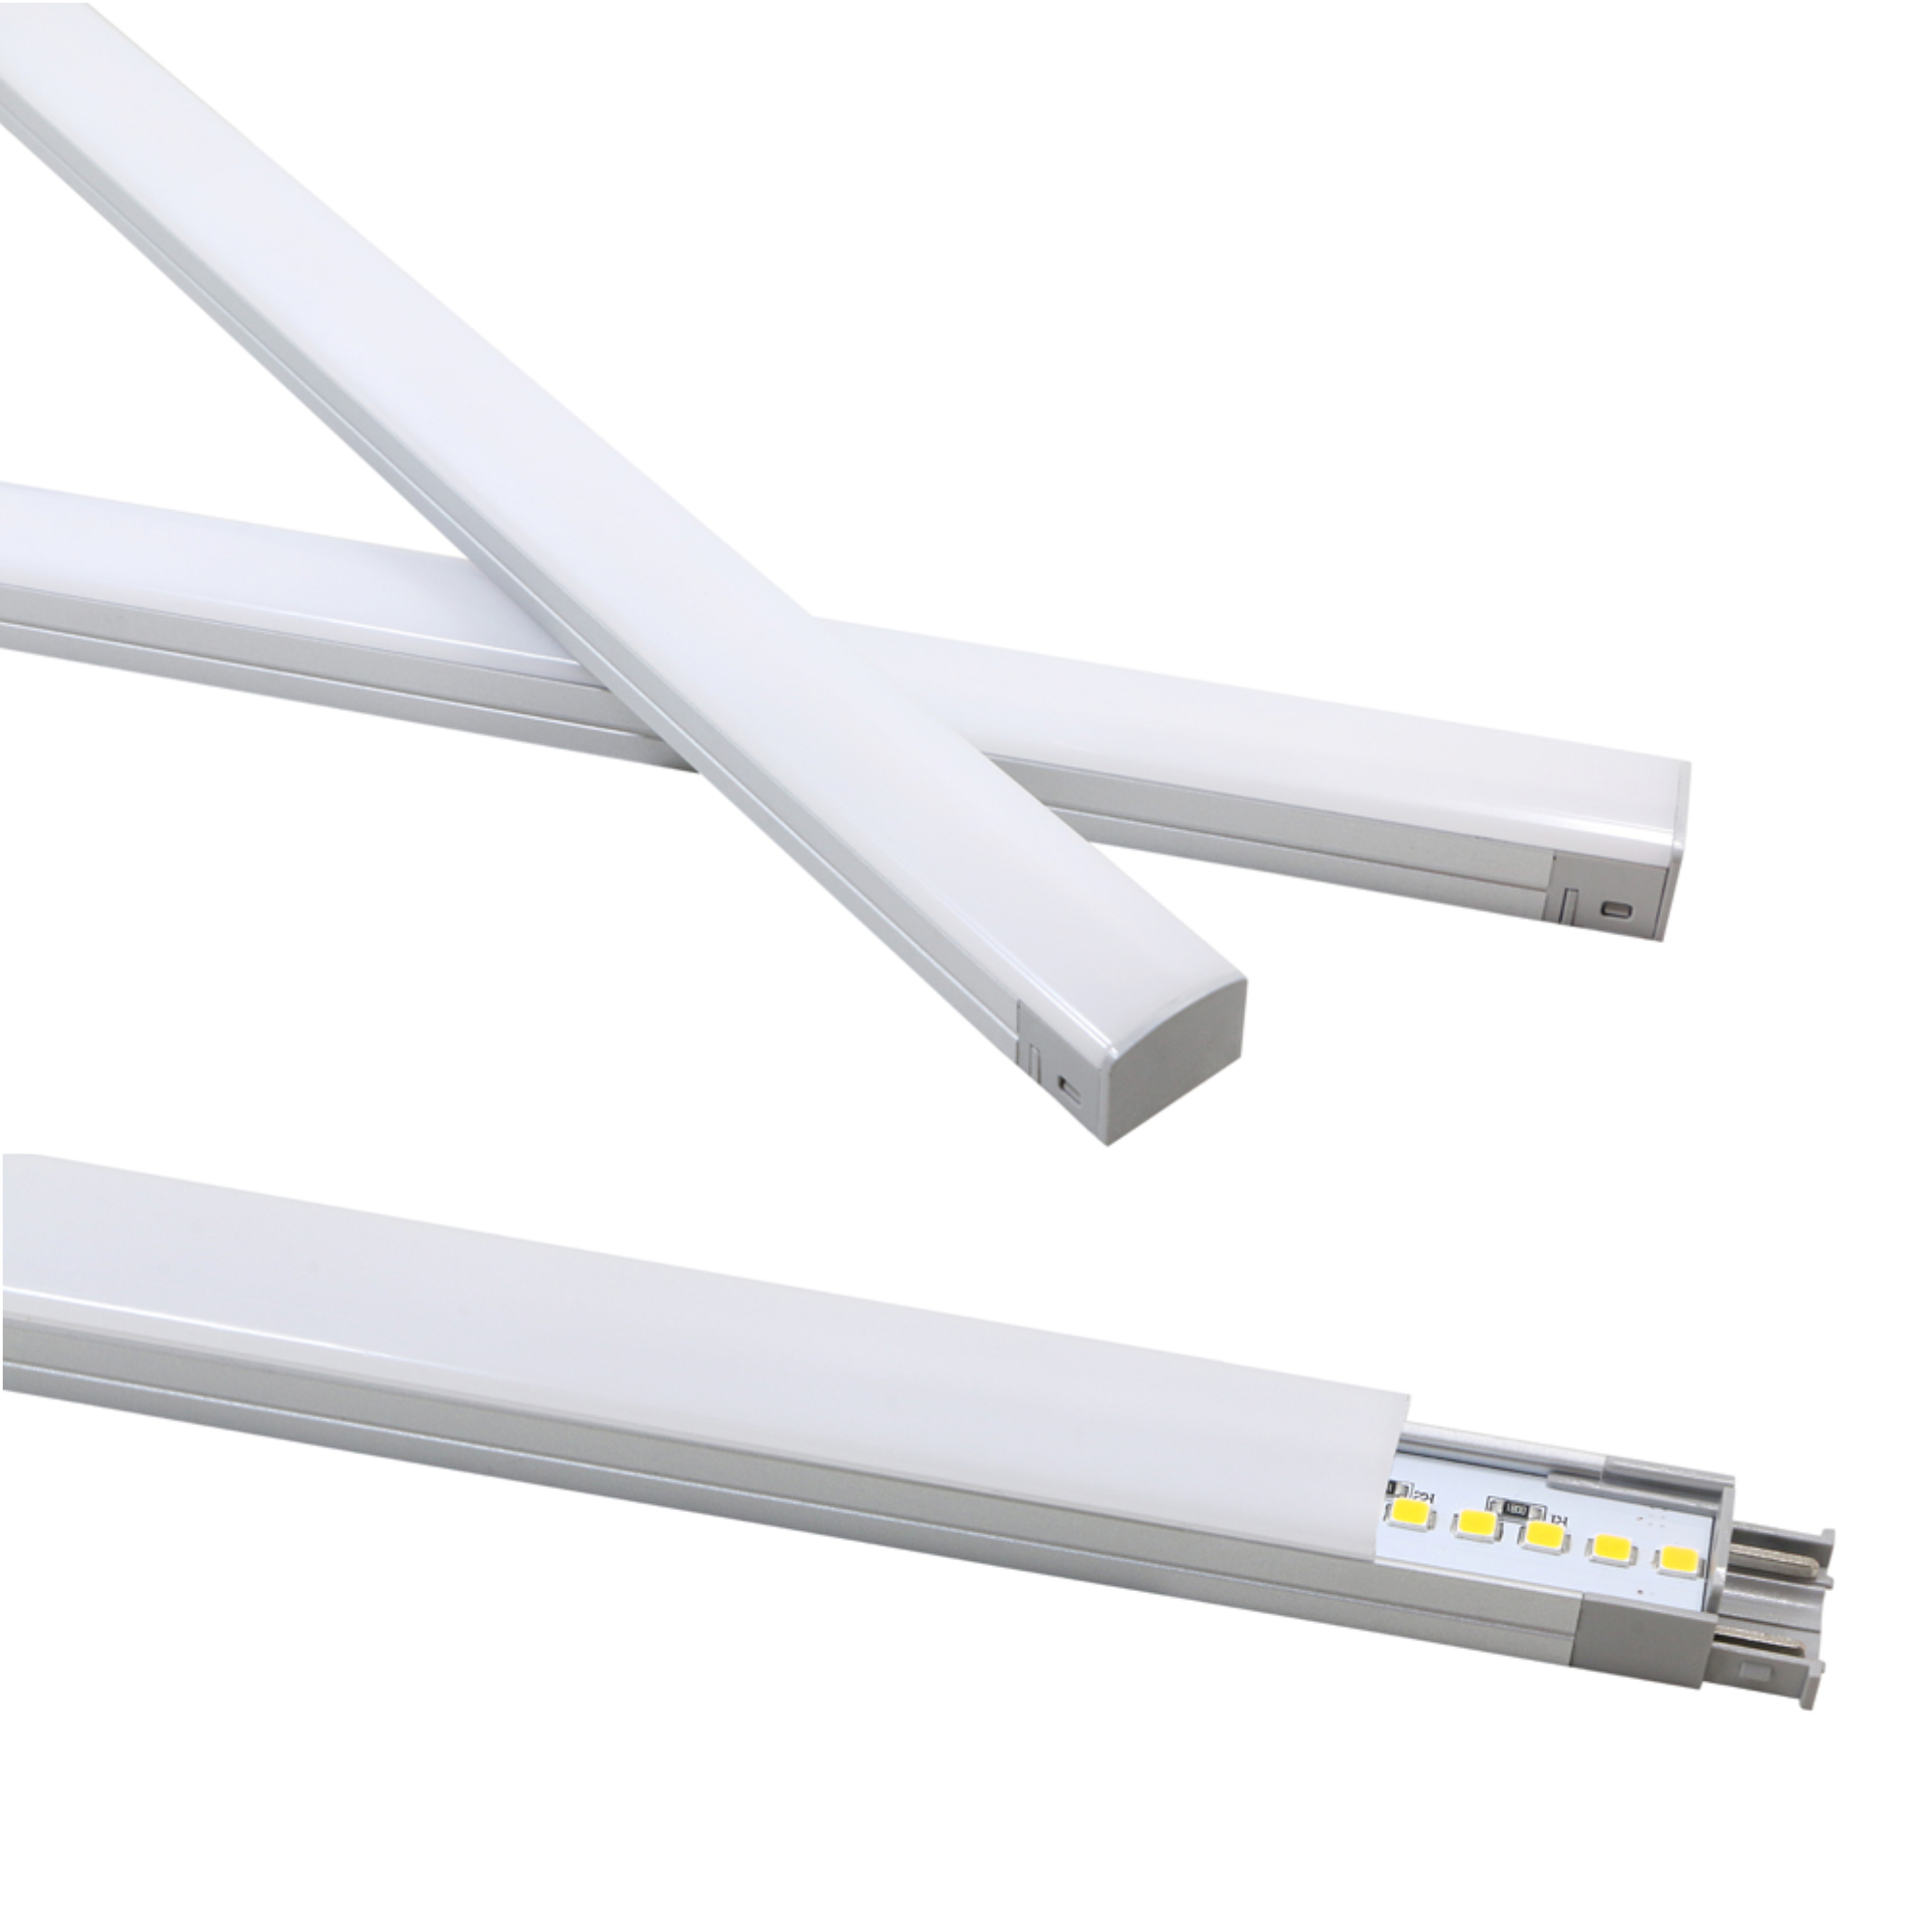 einkaufen Lineara für Küchenleuchten online LED kalb| Unterbausystem individuelles Möbel Warmweiß 50cm kalb-licht, | Leuchten Unterbauleuchte 7W